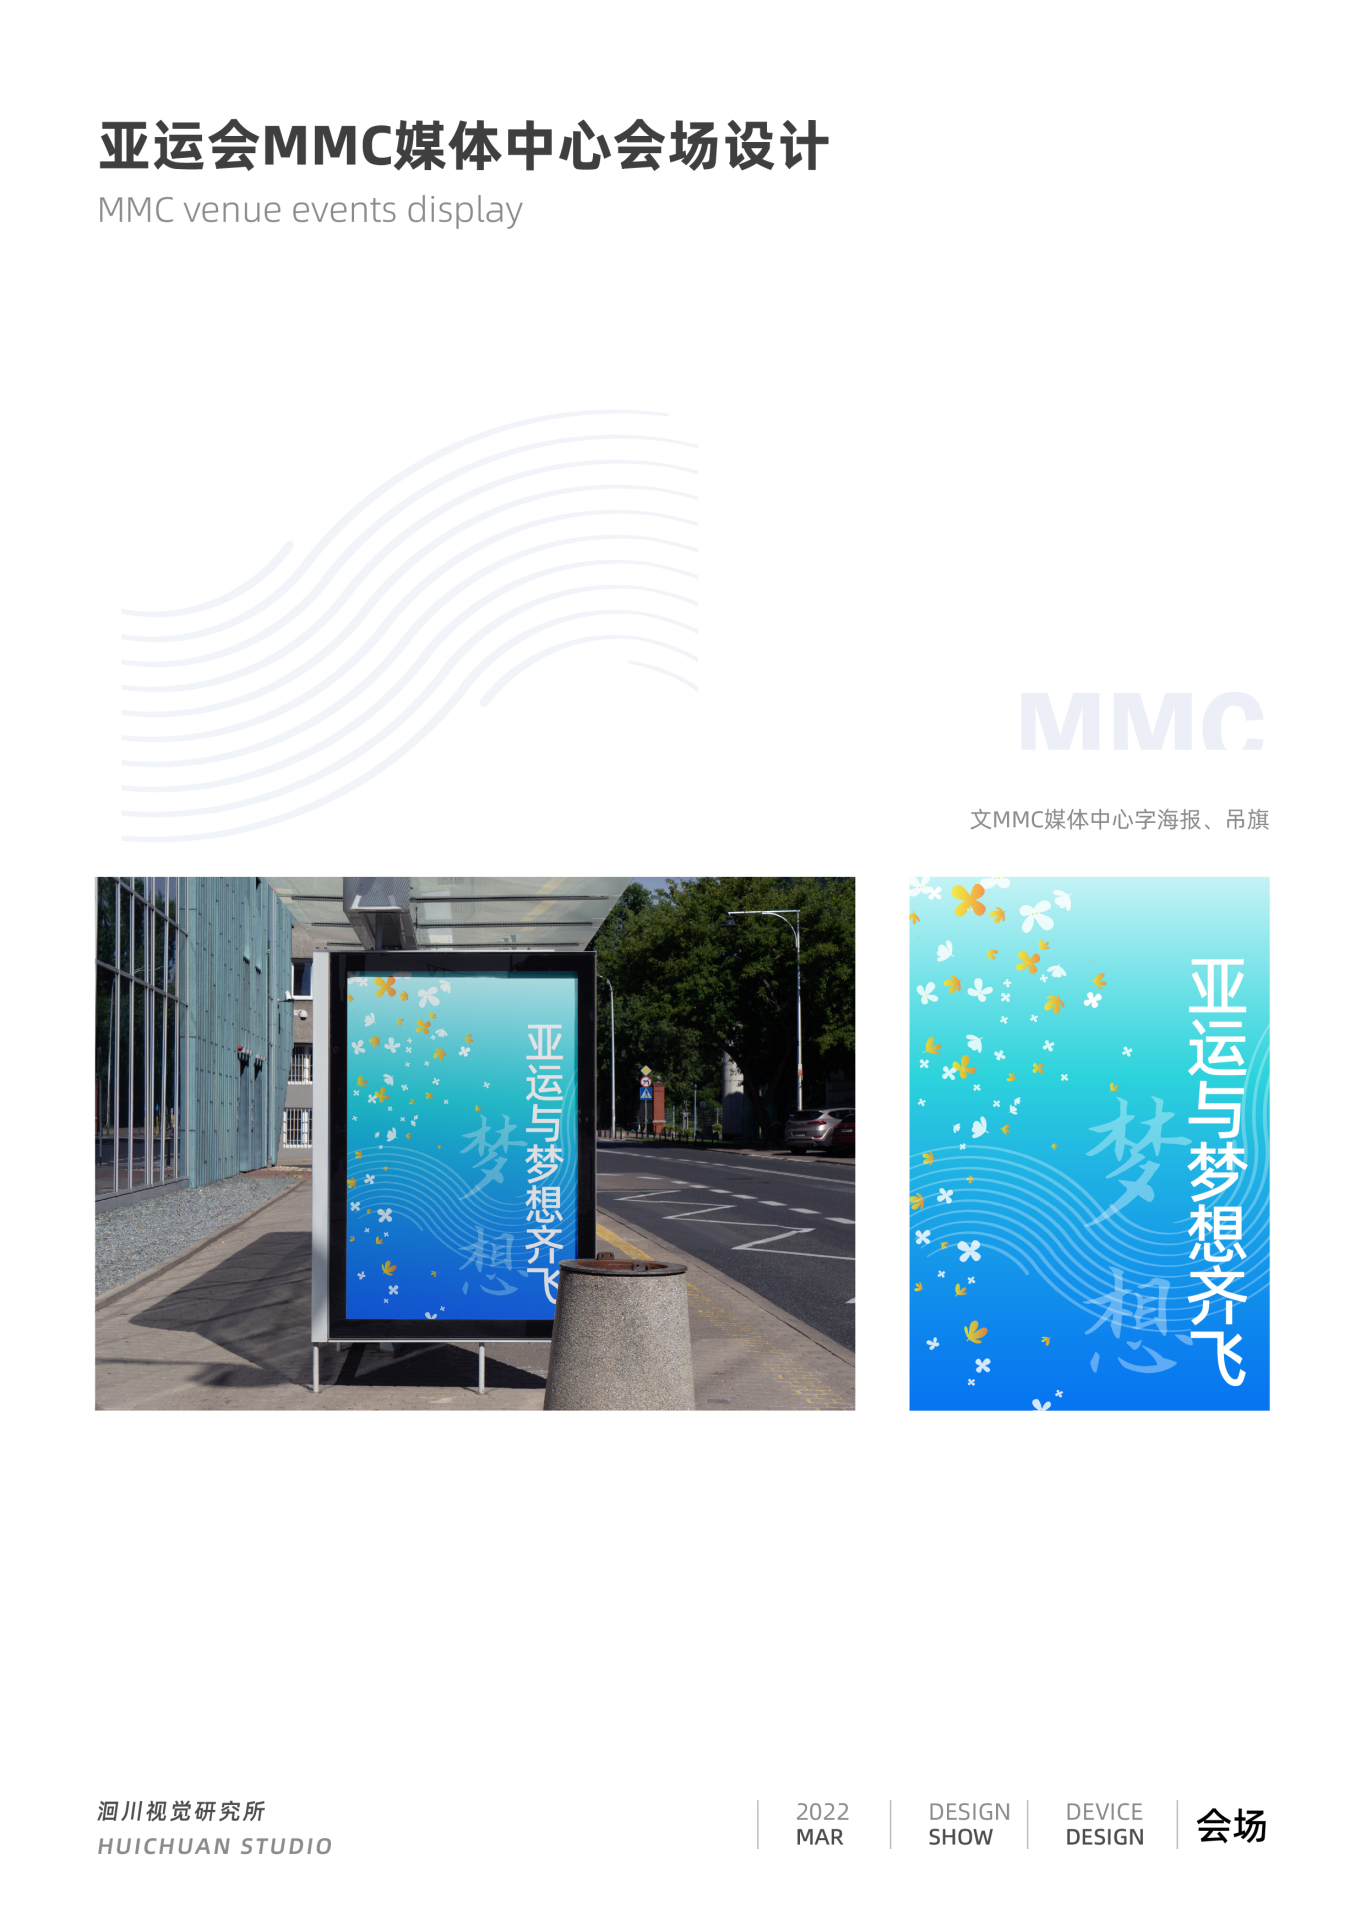 亞運會MMC主媒體中心場館設計圖2